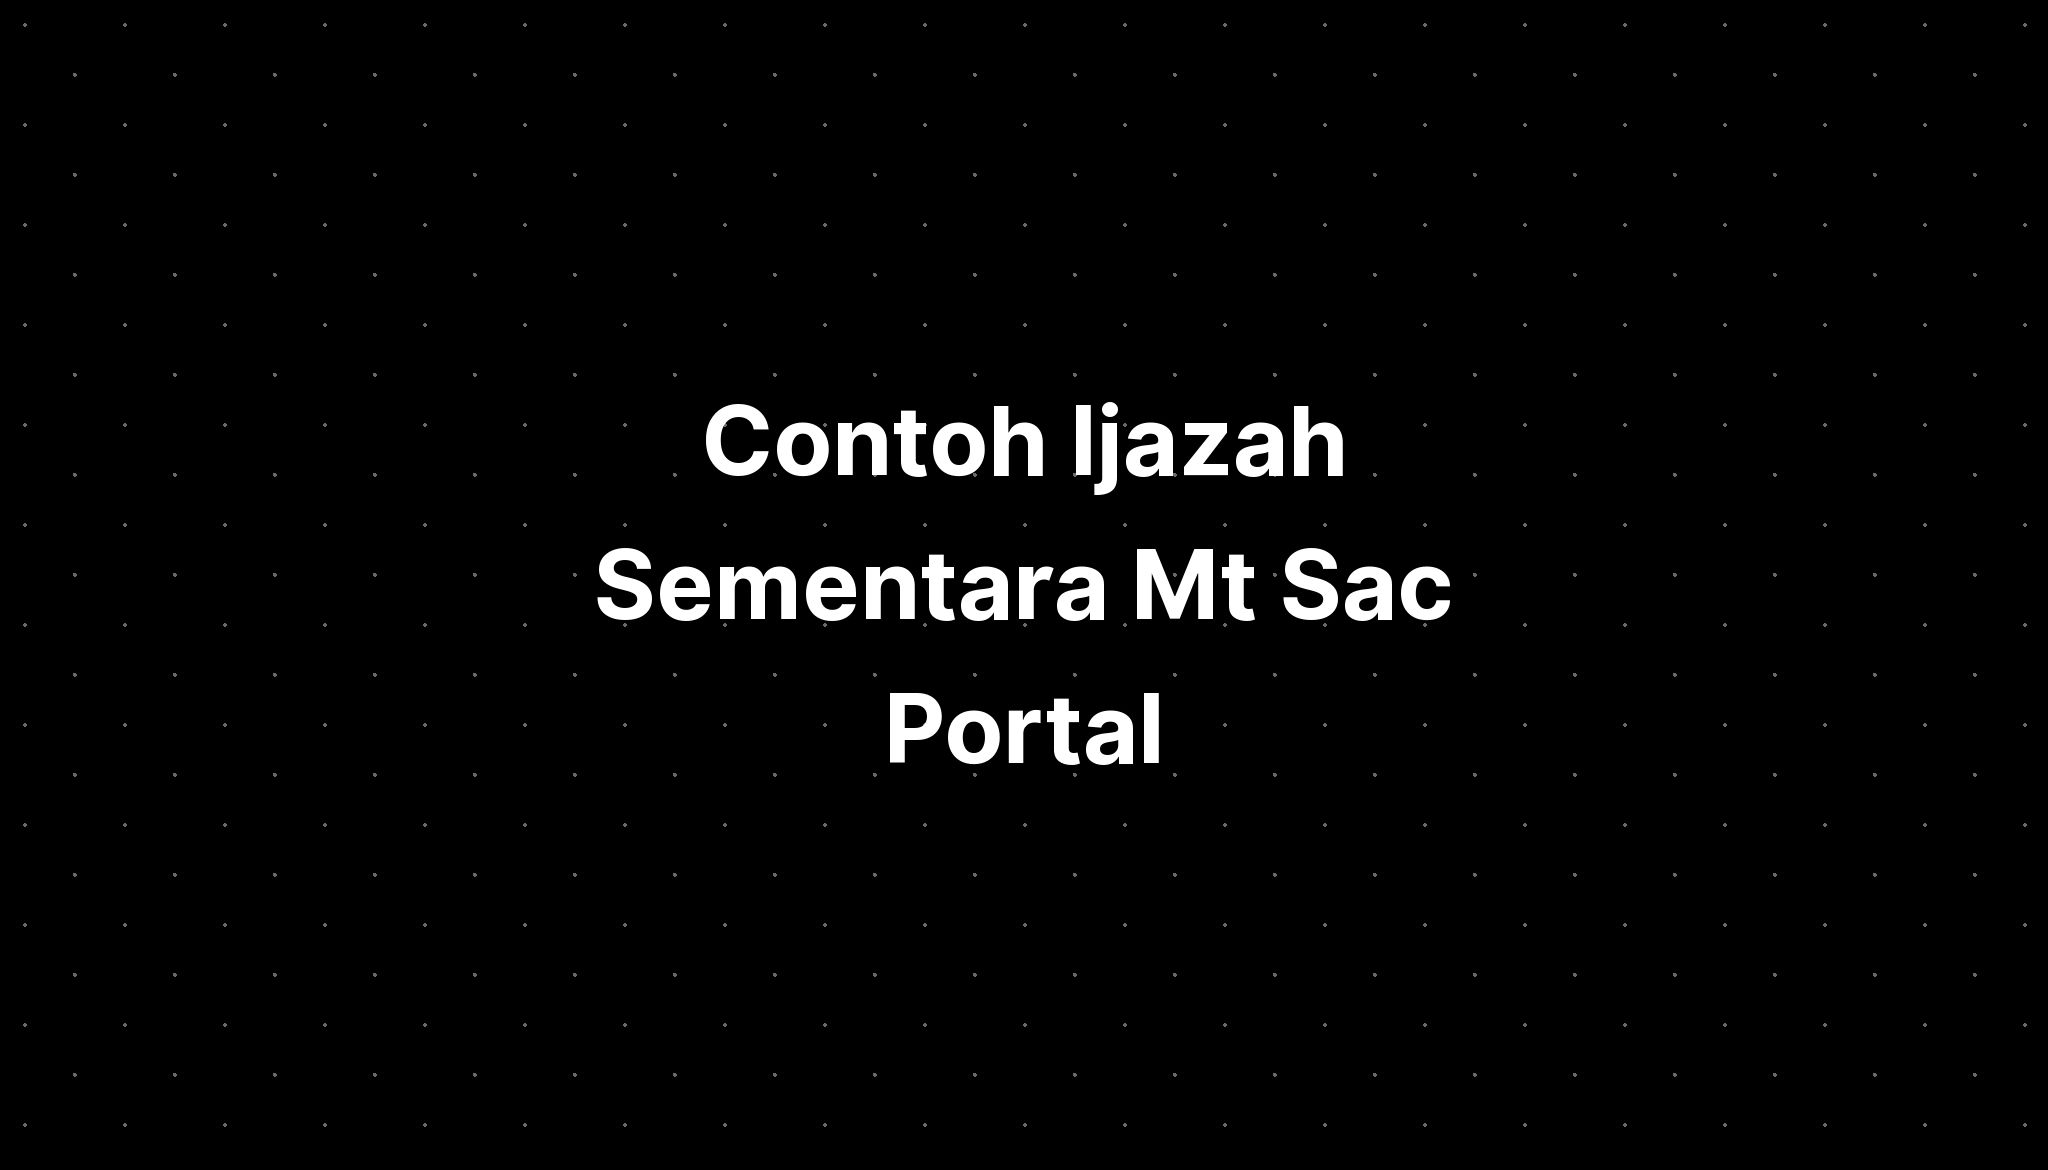 mt sac portal